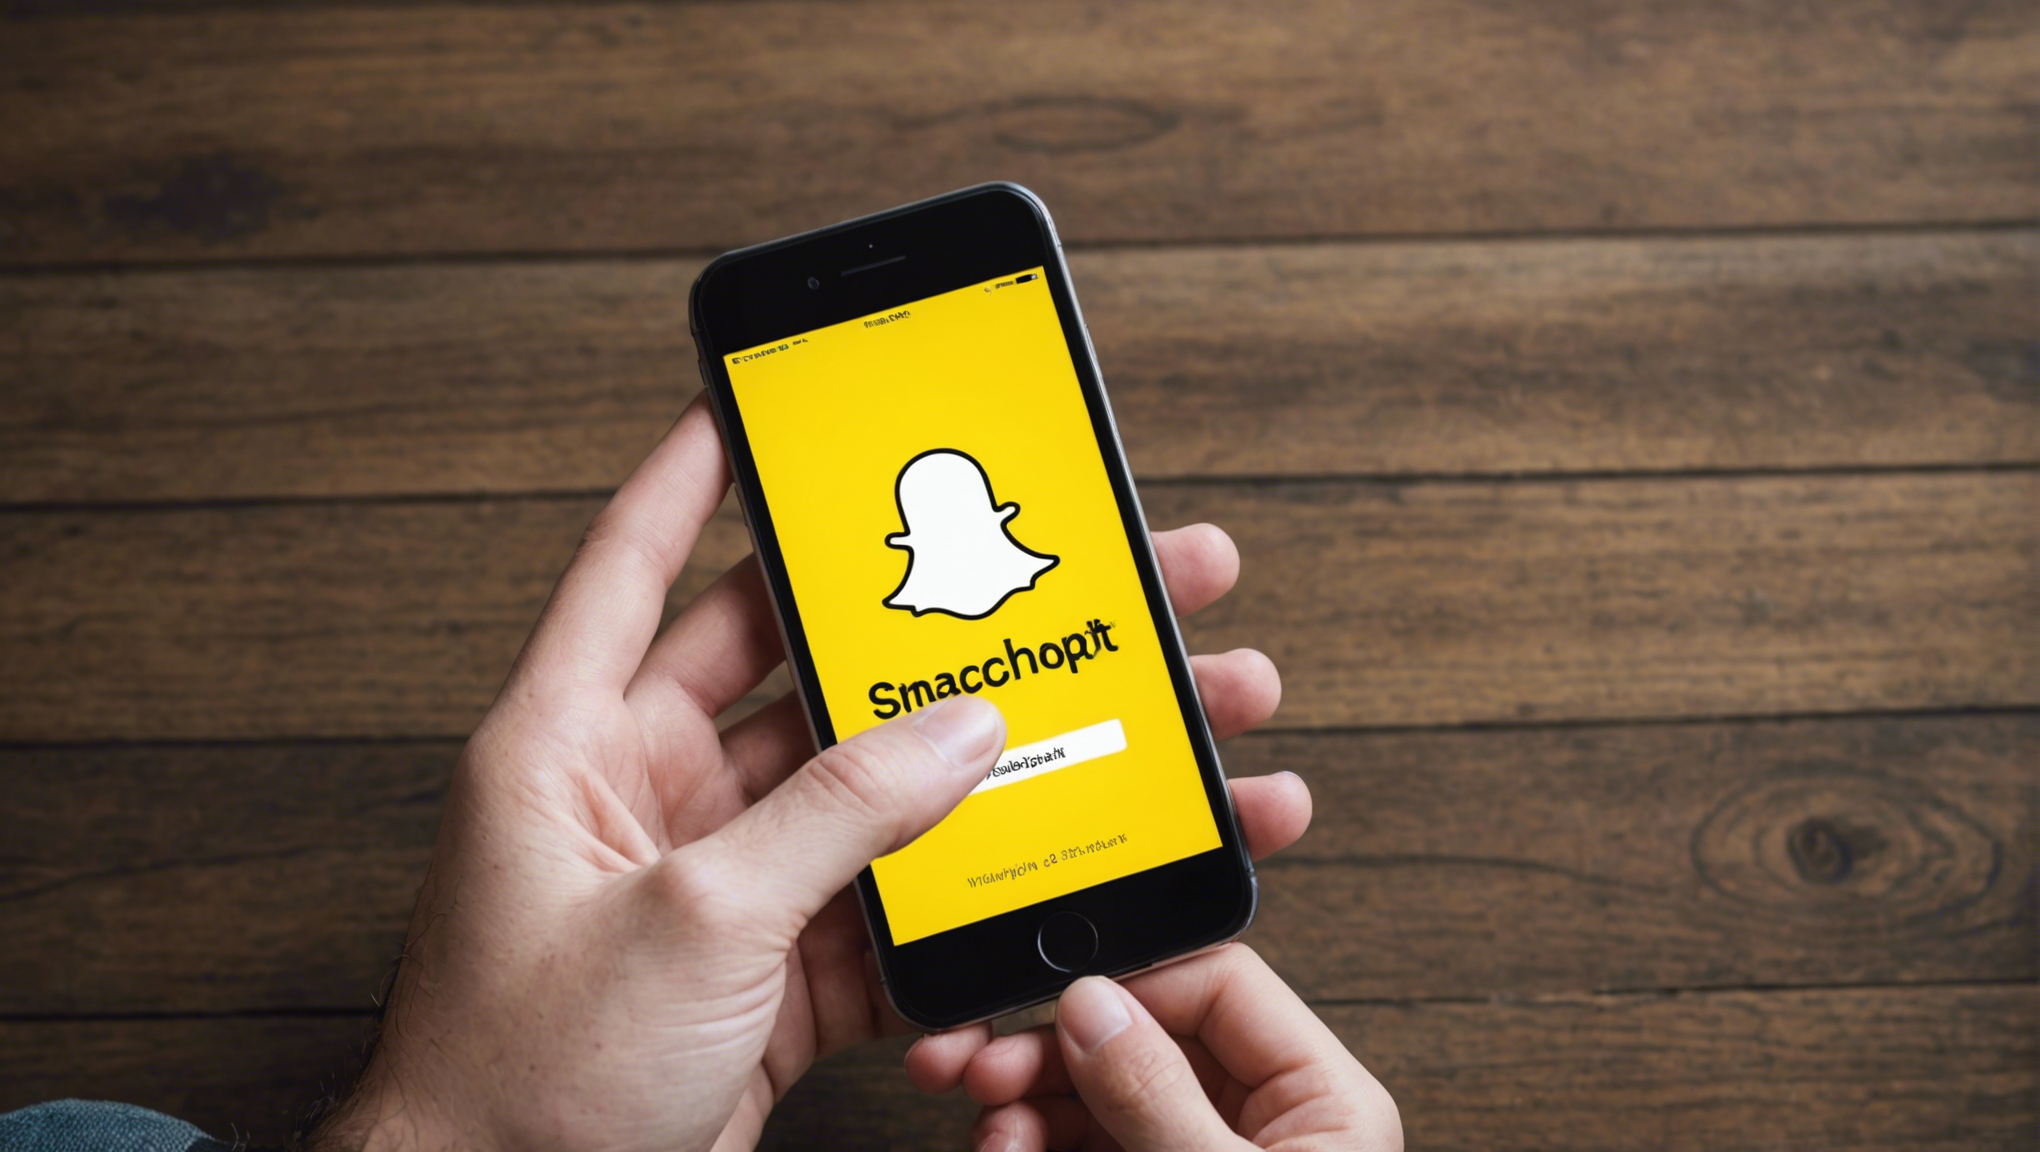 découvrez les meilleures astuces pour optimiser votre utilisation de snapchat et partager du contenu de qualité avec vos amis et abonnés.